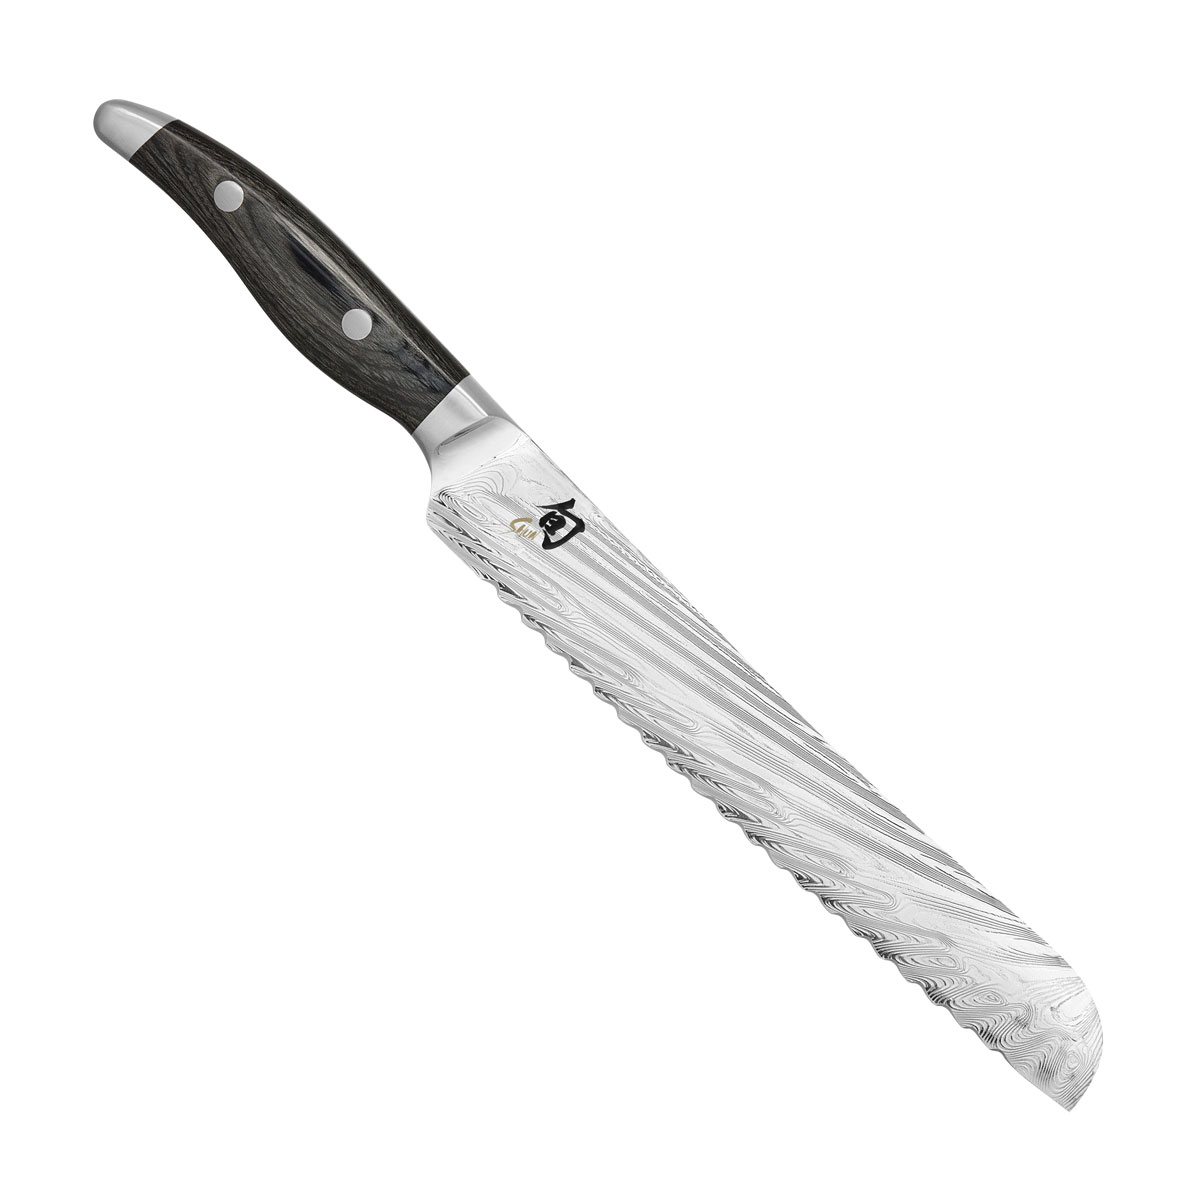 KAI Shun Nagare Brotmesser 23 cm / Damaststahl mit Griff aus grauem Pakkaholz